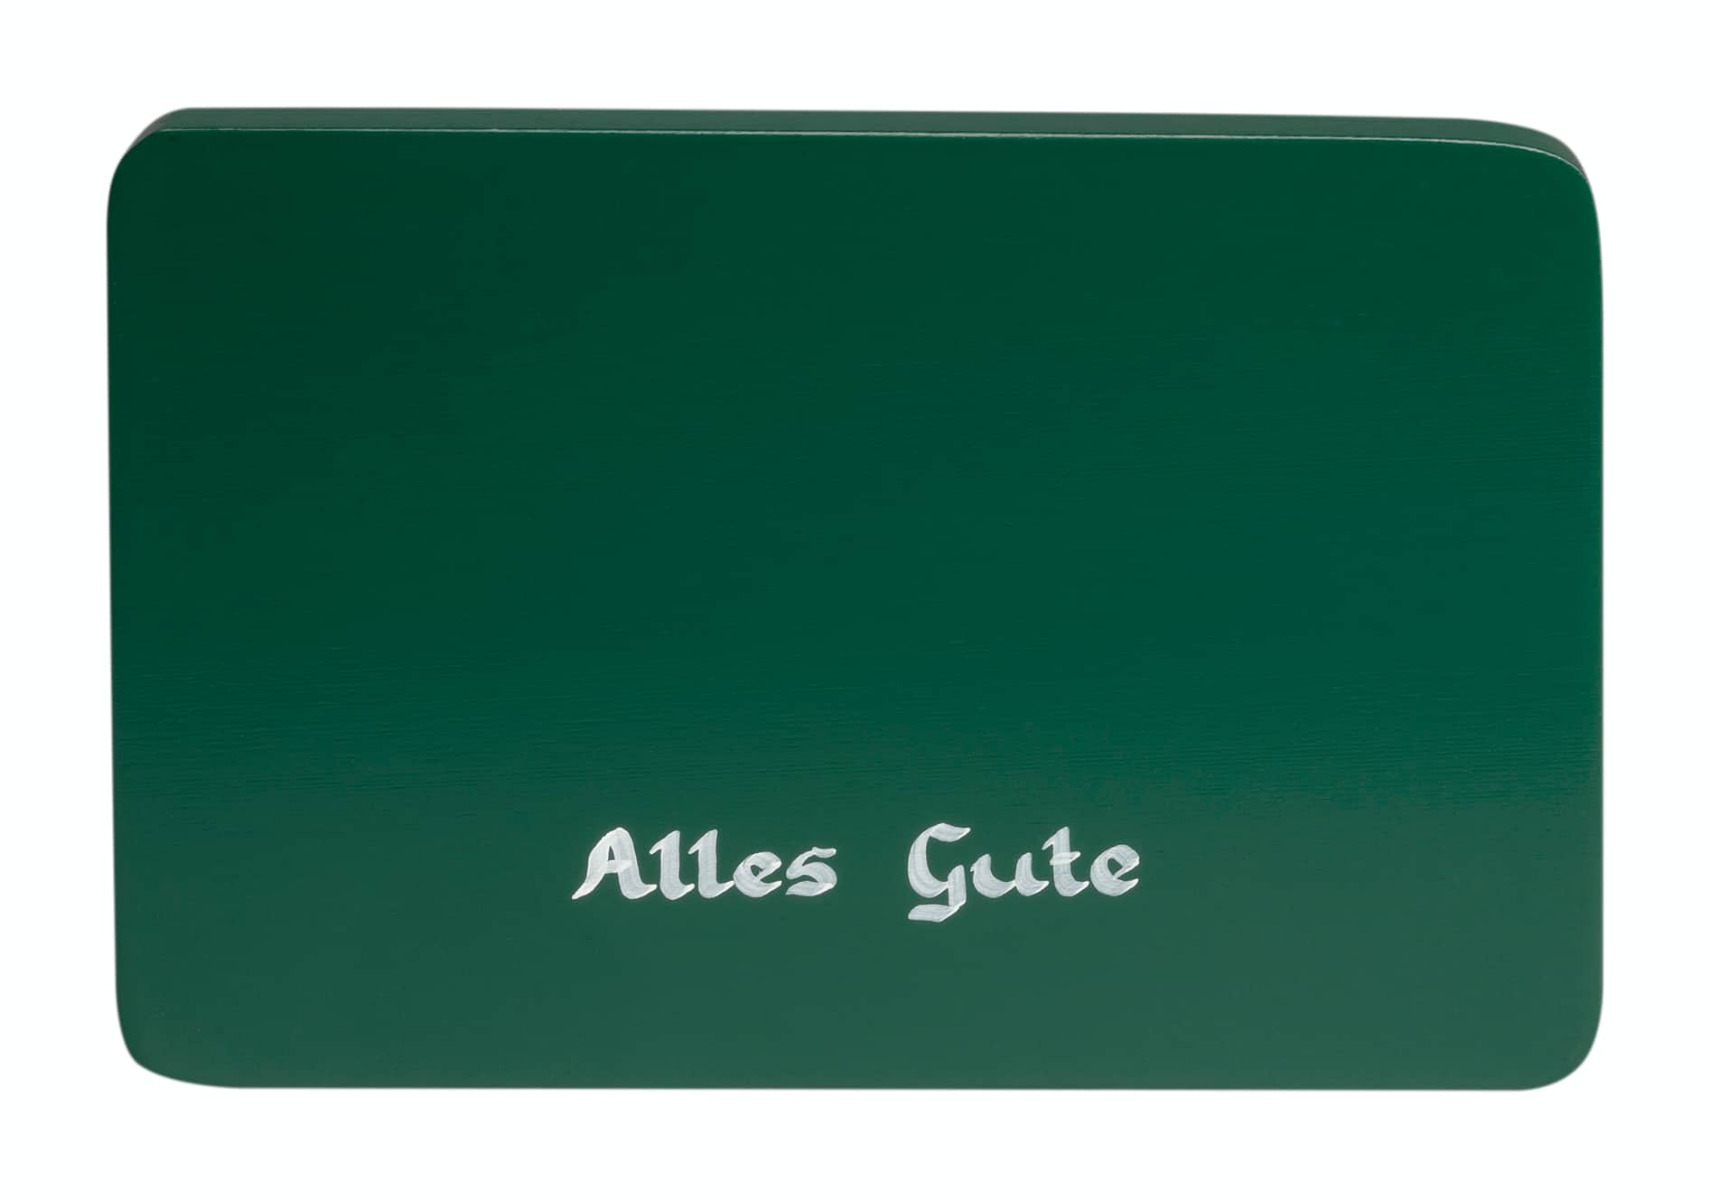 Beschriftete Sockelplatte, grün, "Alles Gute"